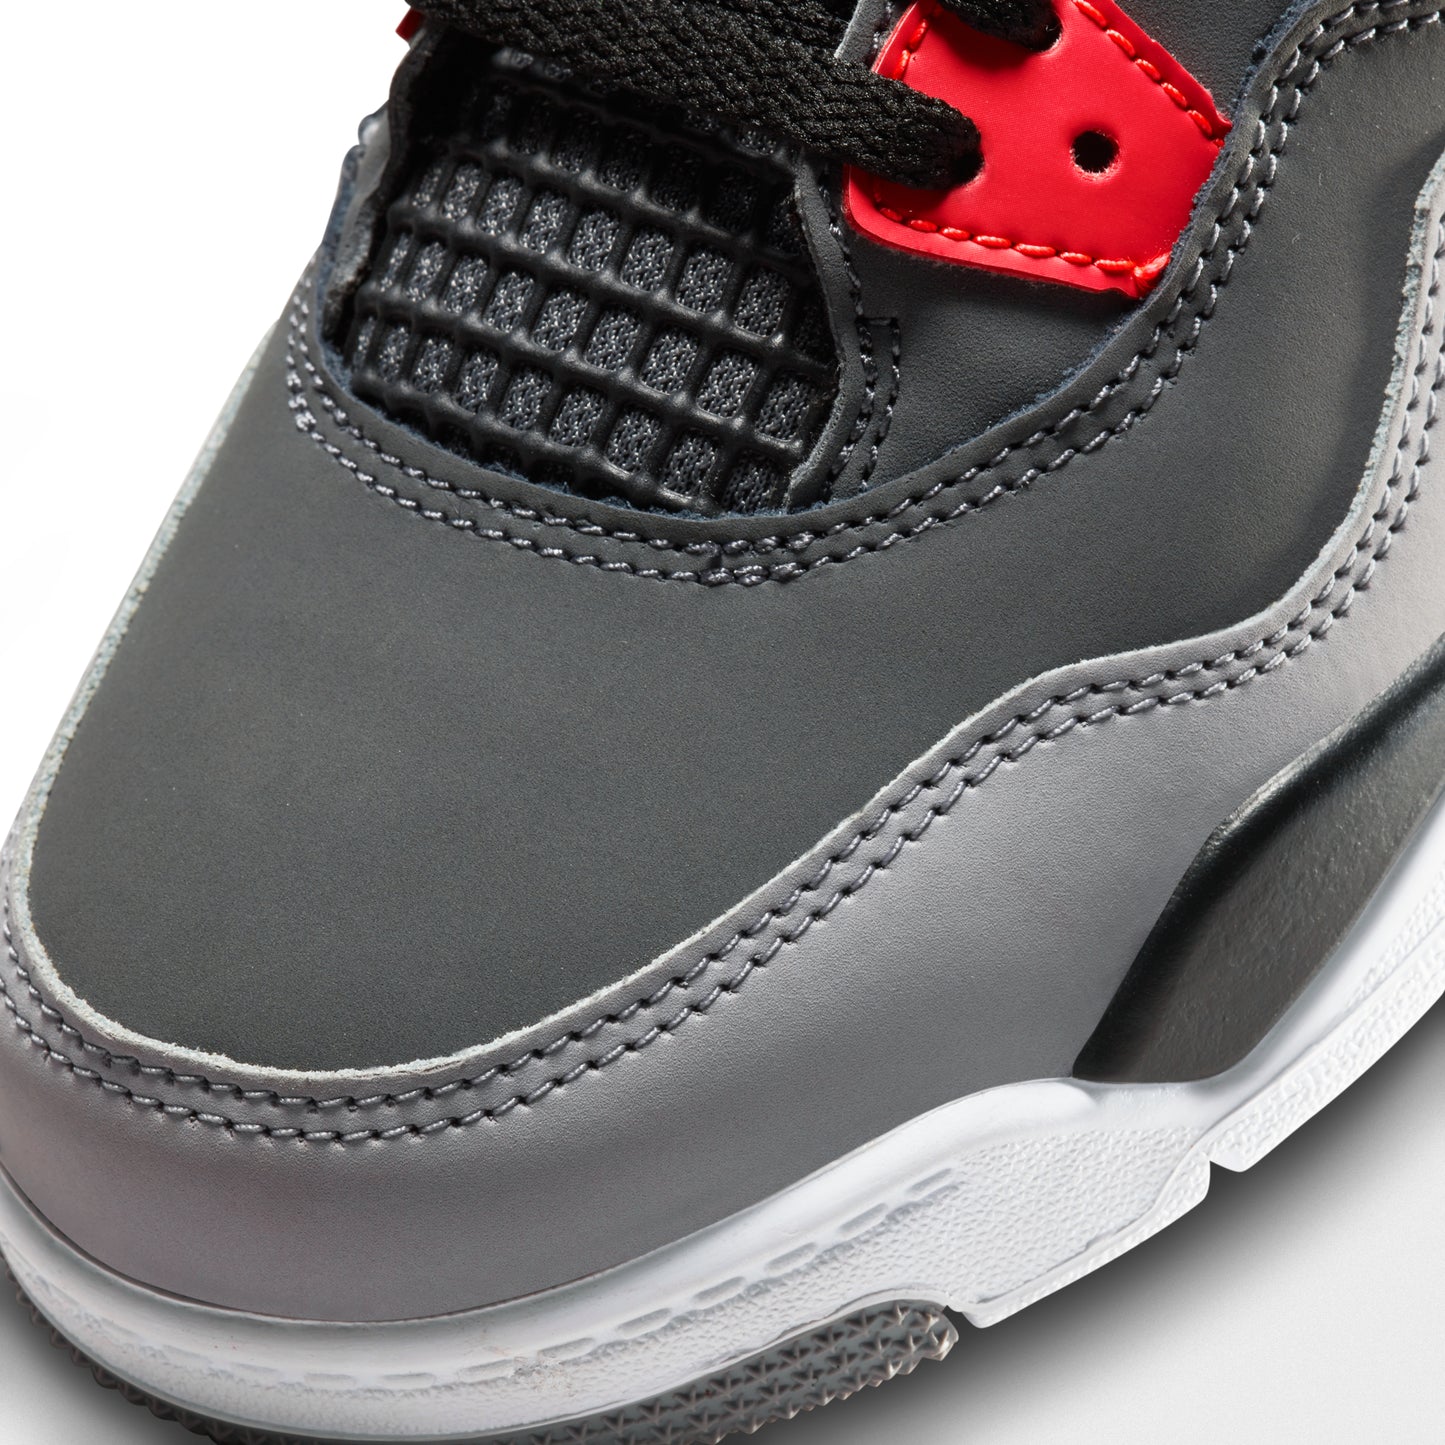 Nike Air Jordan 4 Retro Infrared (PS)